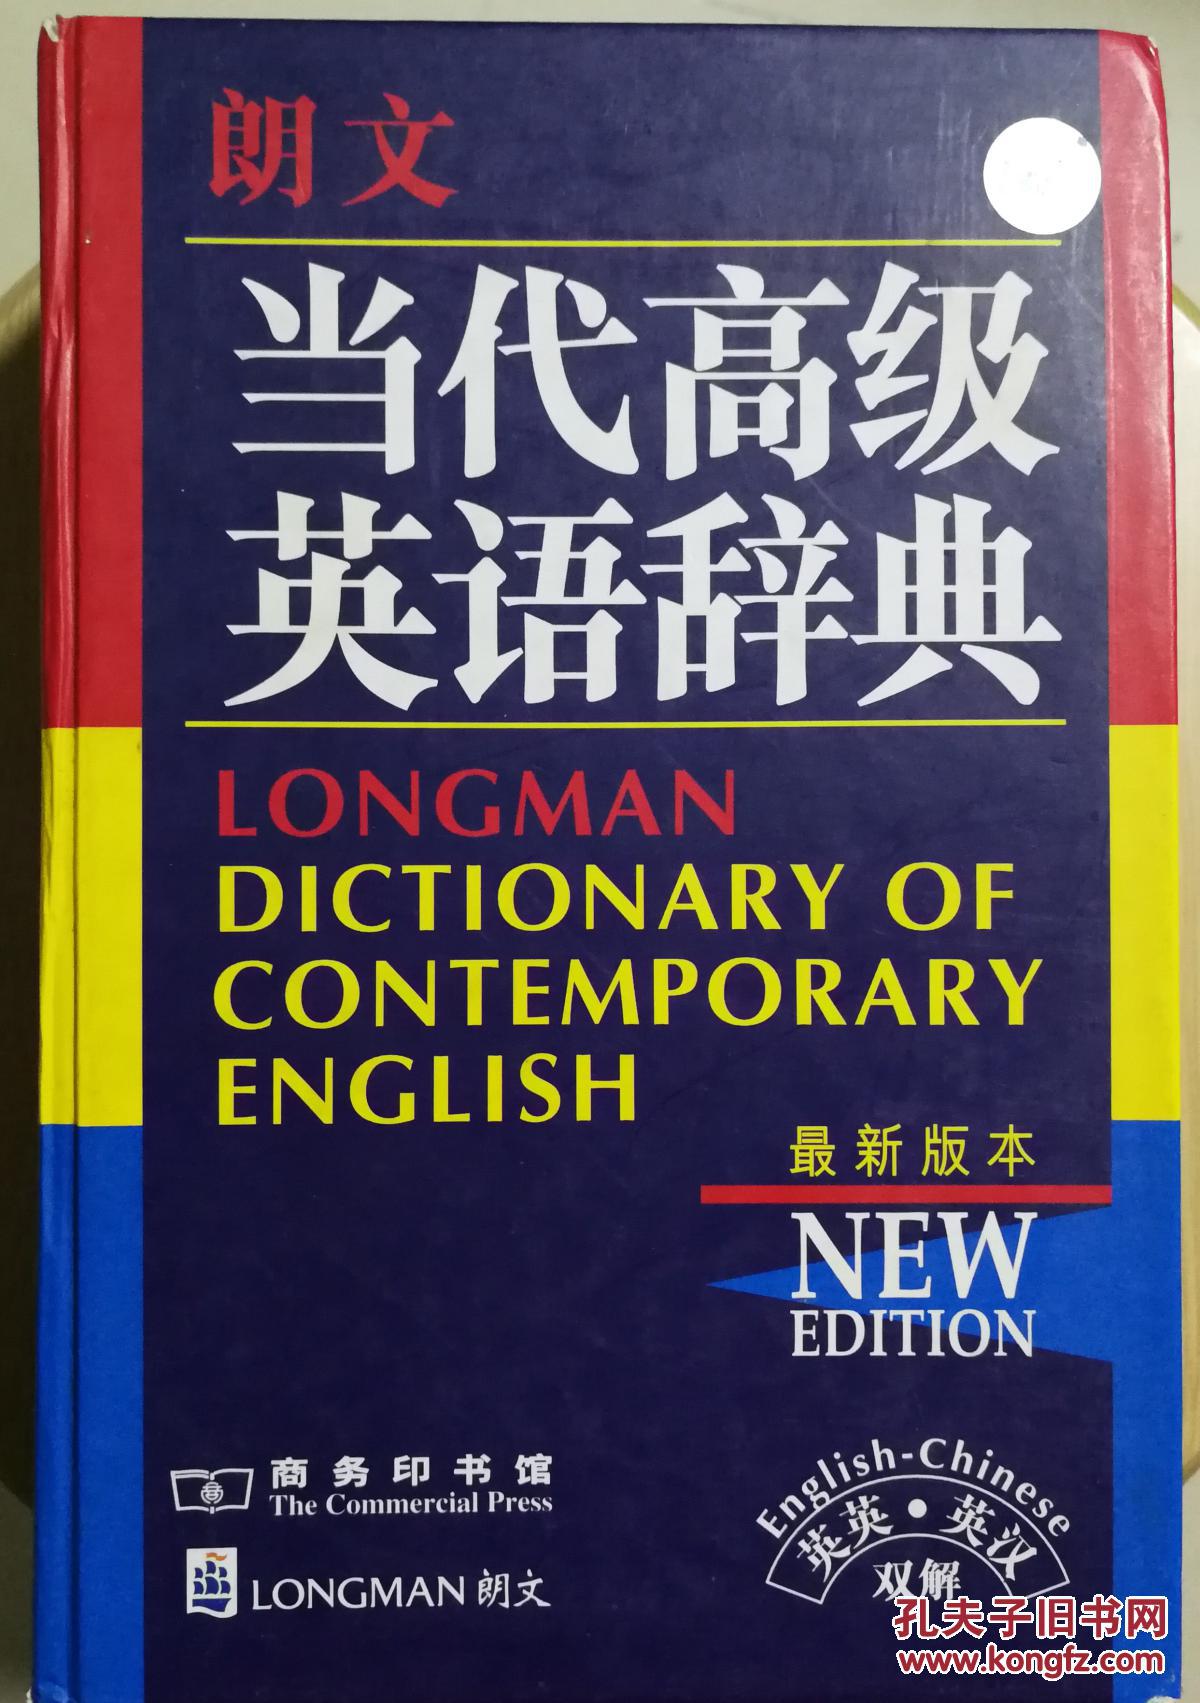 朗文当代高级英语辞典外研社英汉词典两卷合售另赠送一本英汉词典也可